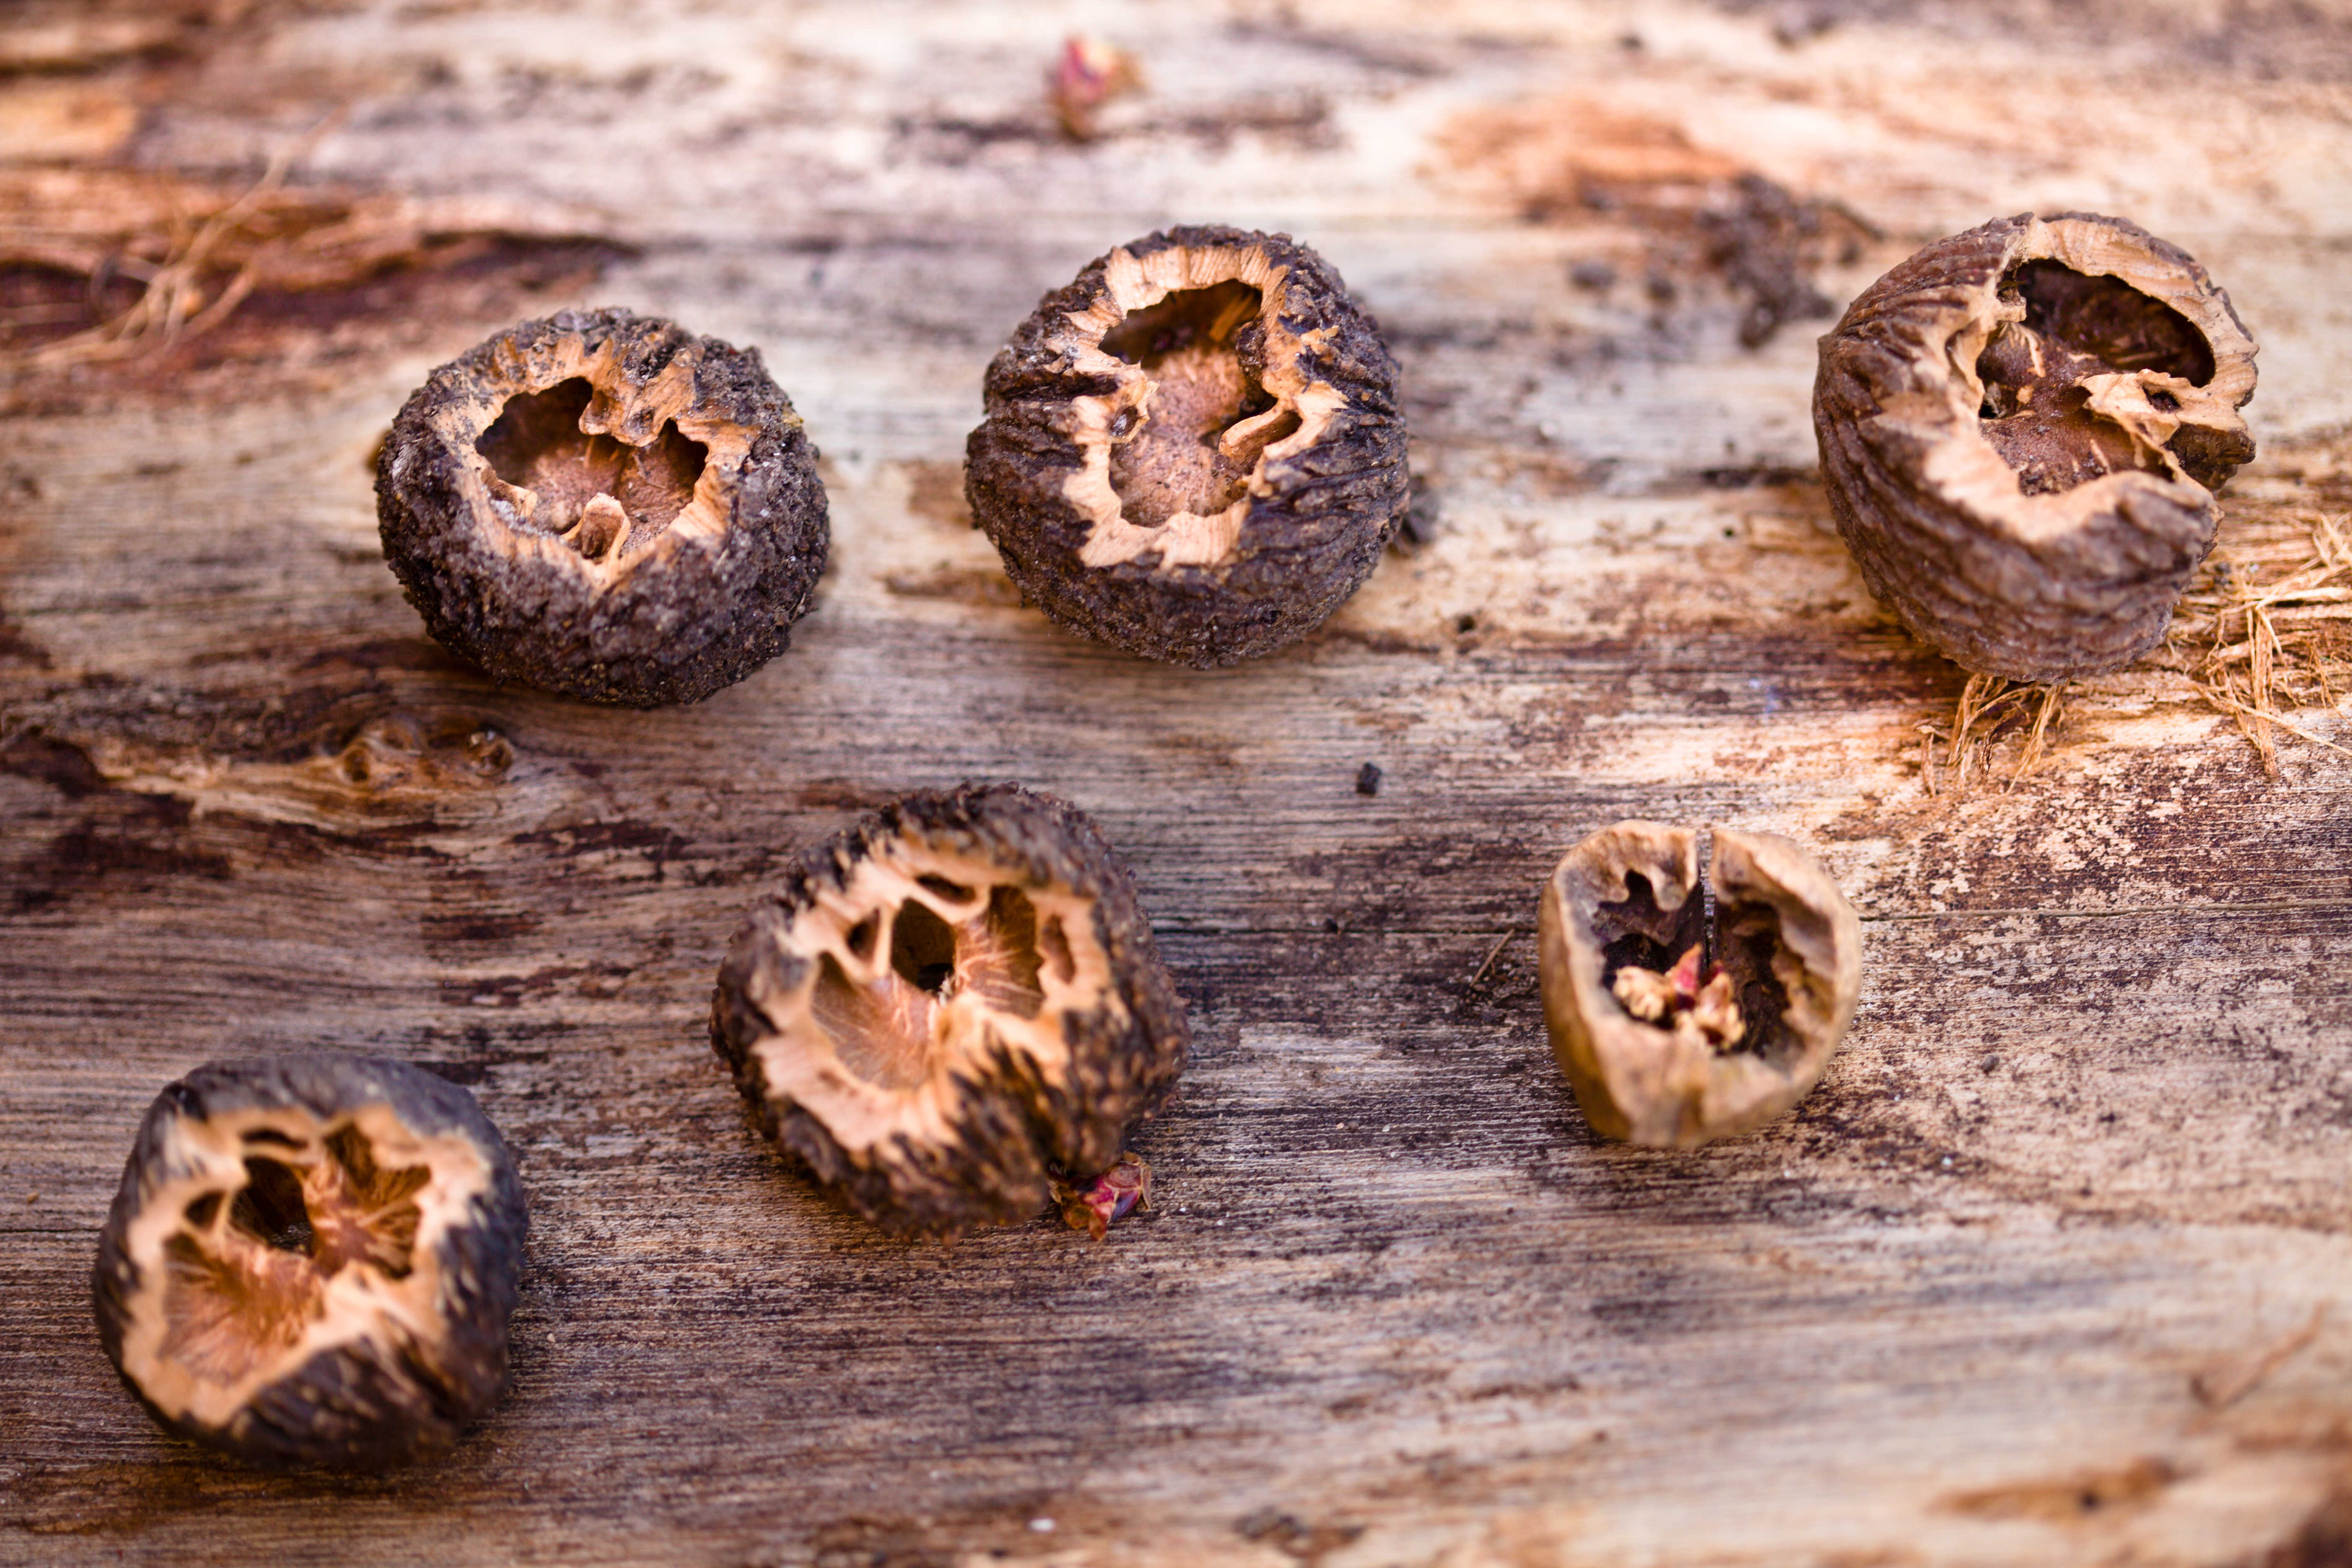 black walnut nuts hull